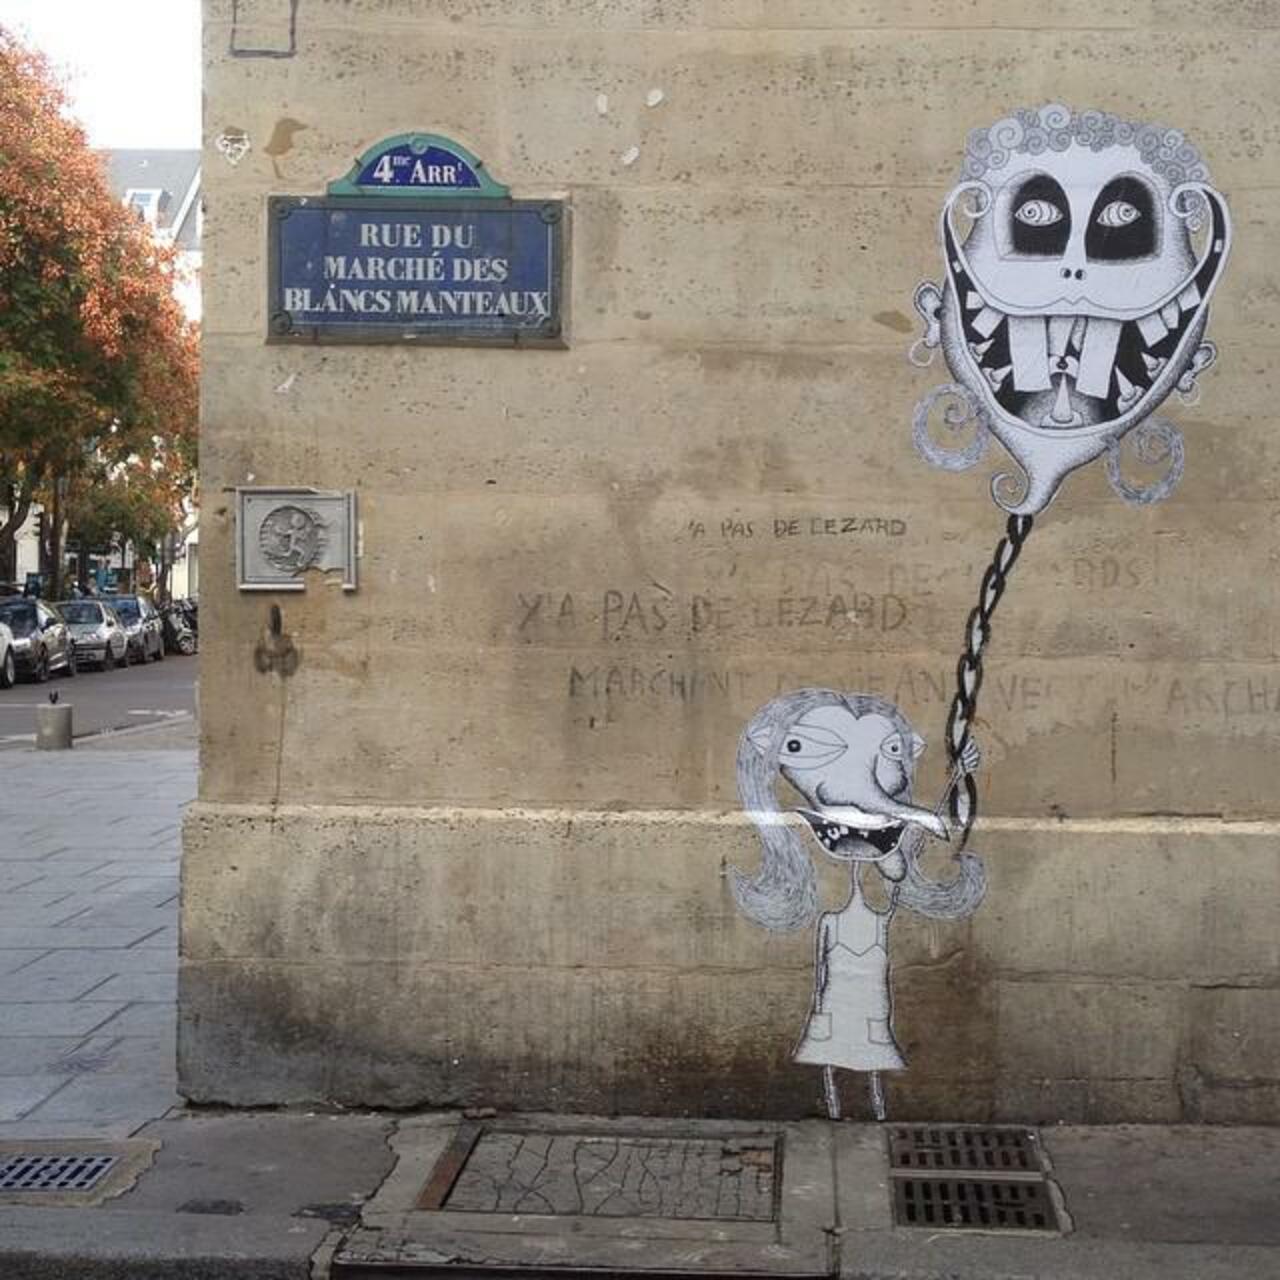 circumjacent_fr: #Paris #graffiti photo by 3eparallele http://ift.tt/1QrU4Zk #StreetArt http://t.co/b9suxyuYDz